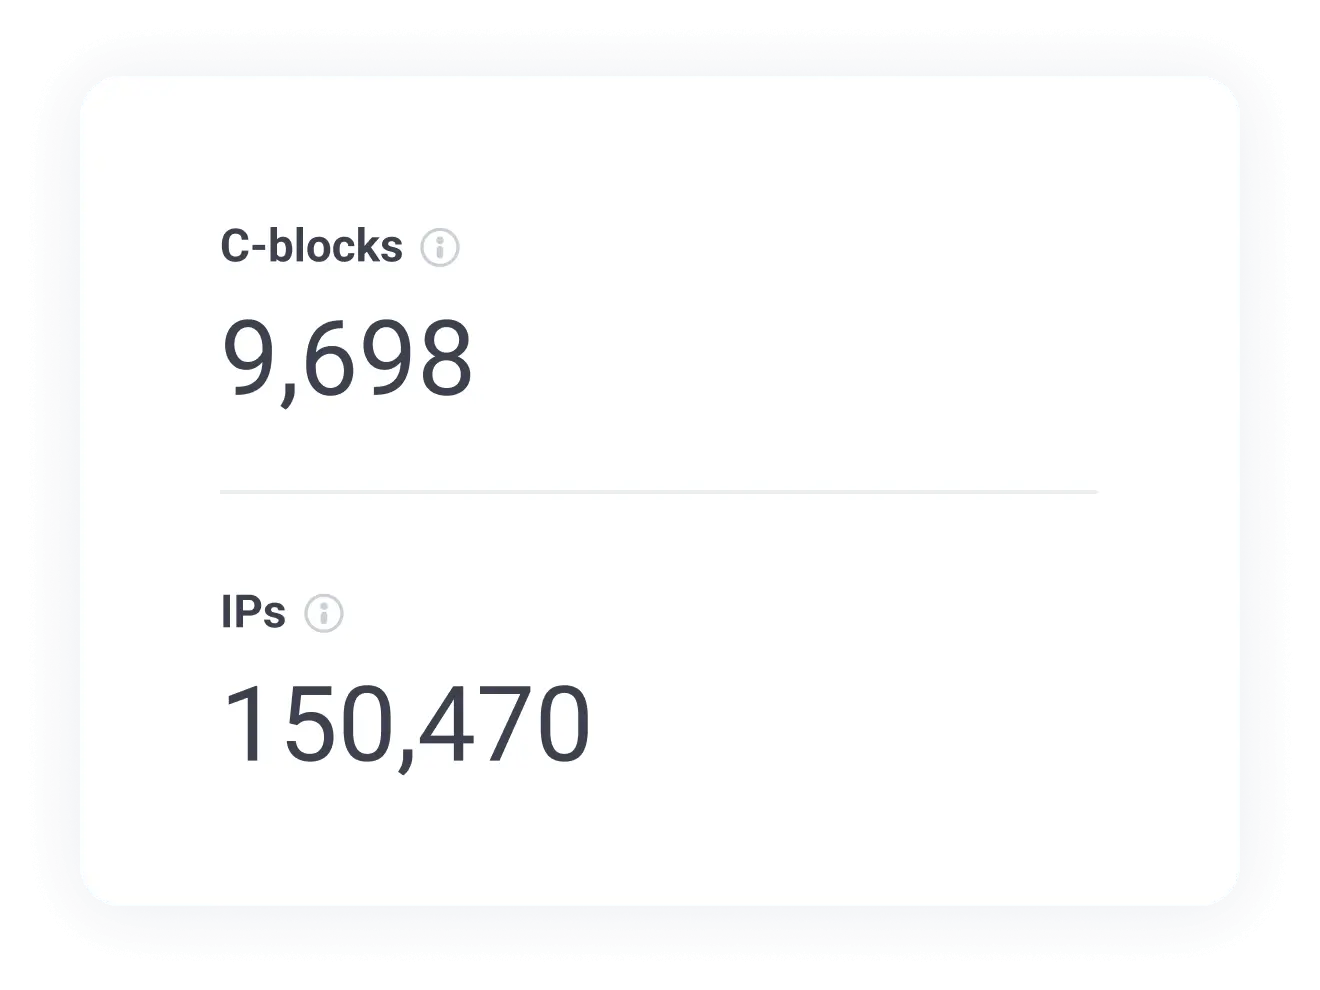 Controleer het aantal unieke IP’s en C-blokken